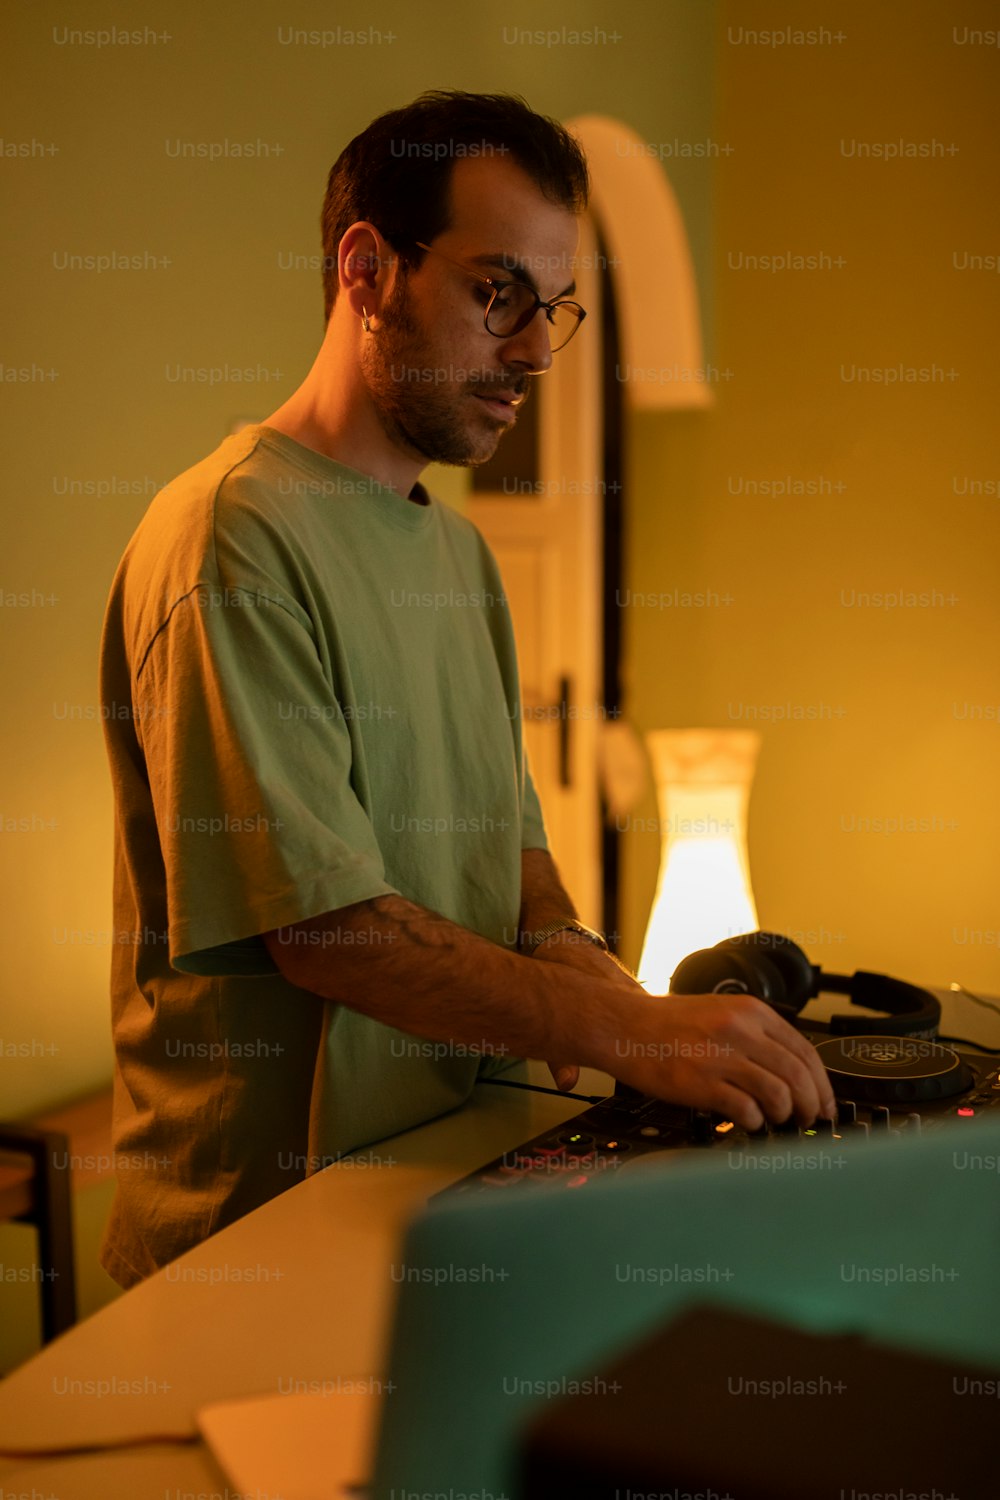 Ein Mann in einem grünen Hemd benutzt einen Laptop